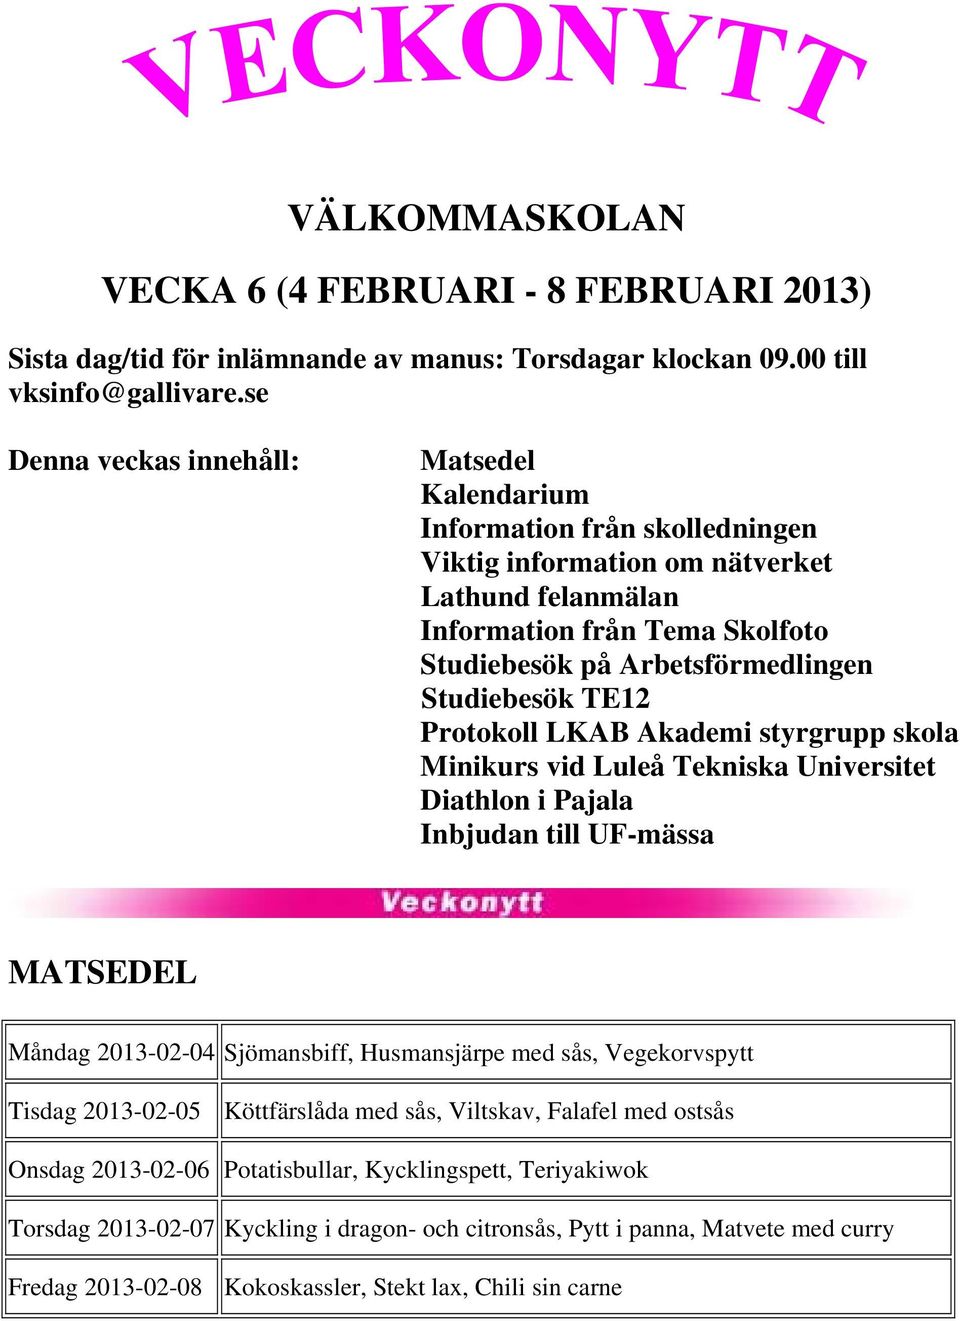 Studiebesök TE12 Protokoll LKAB Akademi styrgrupp skola Minikurs vid Luleå Tekniska Universitet Diathlon i Pajala Inbjudan till UF-mässa MATSEDEL Måndag 2013-02-04 Sjömansbiff, Husmansjärpe med sås,